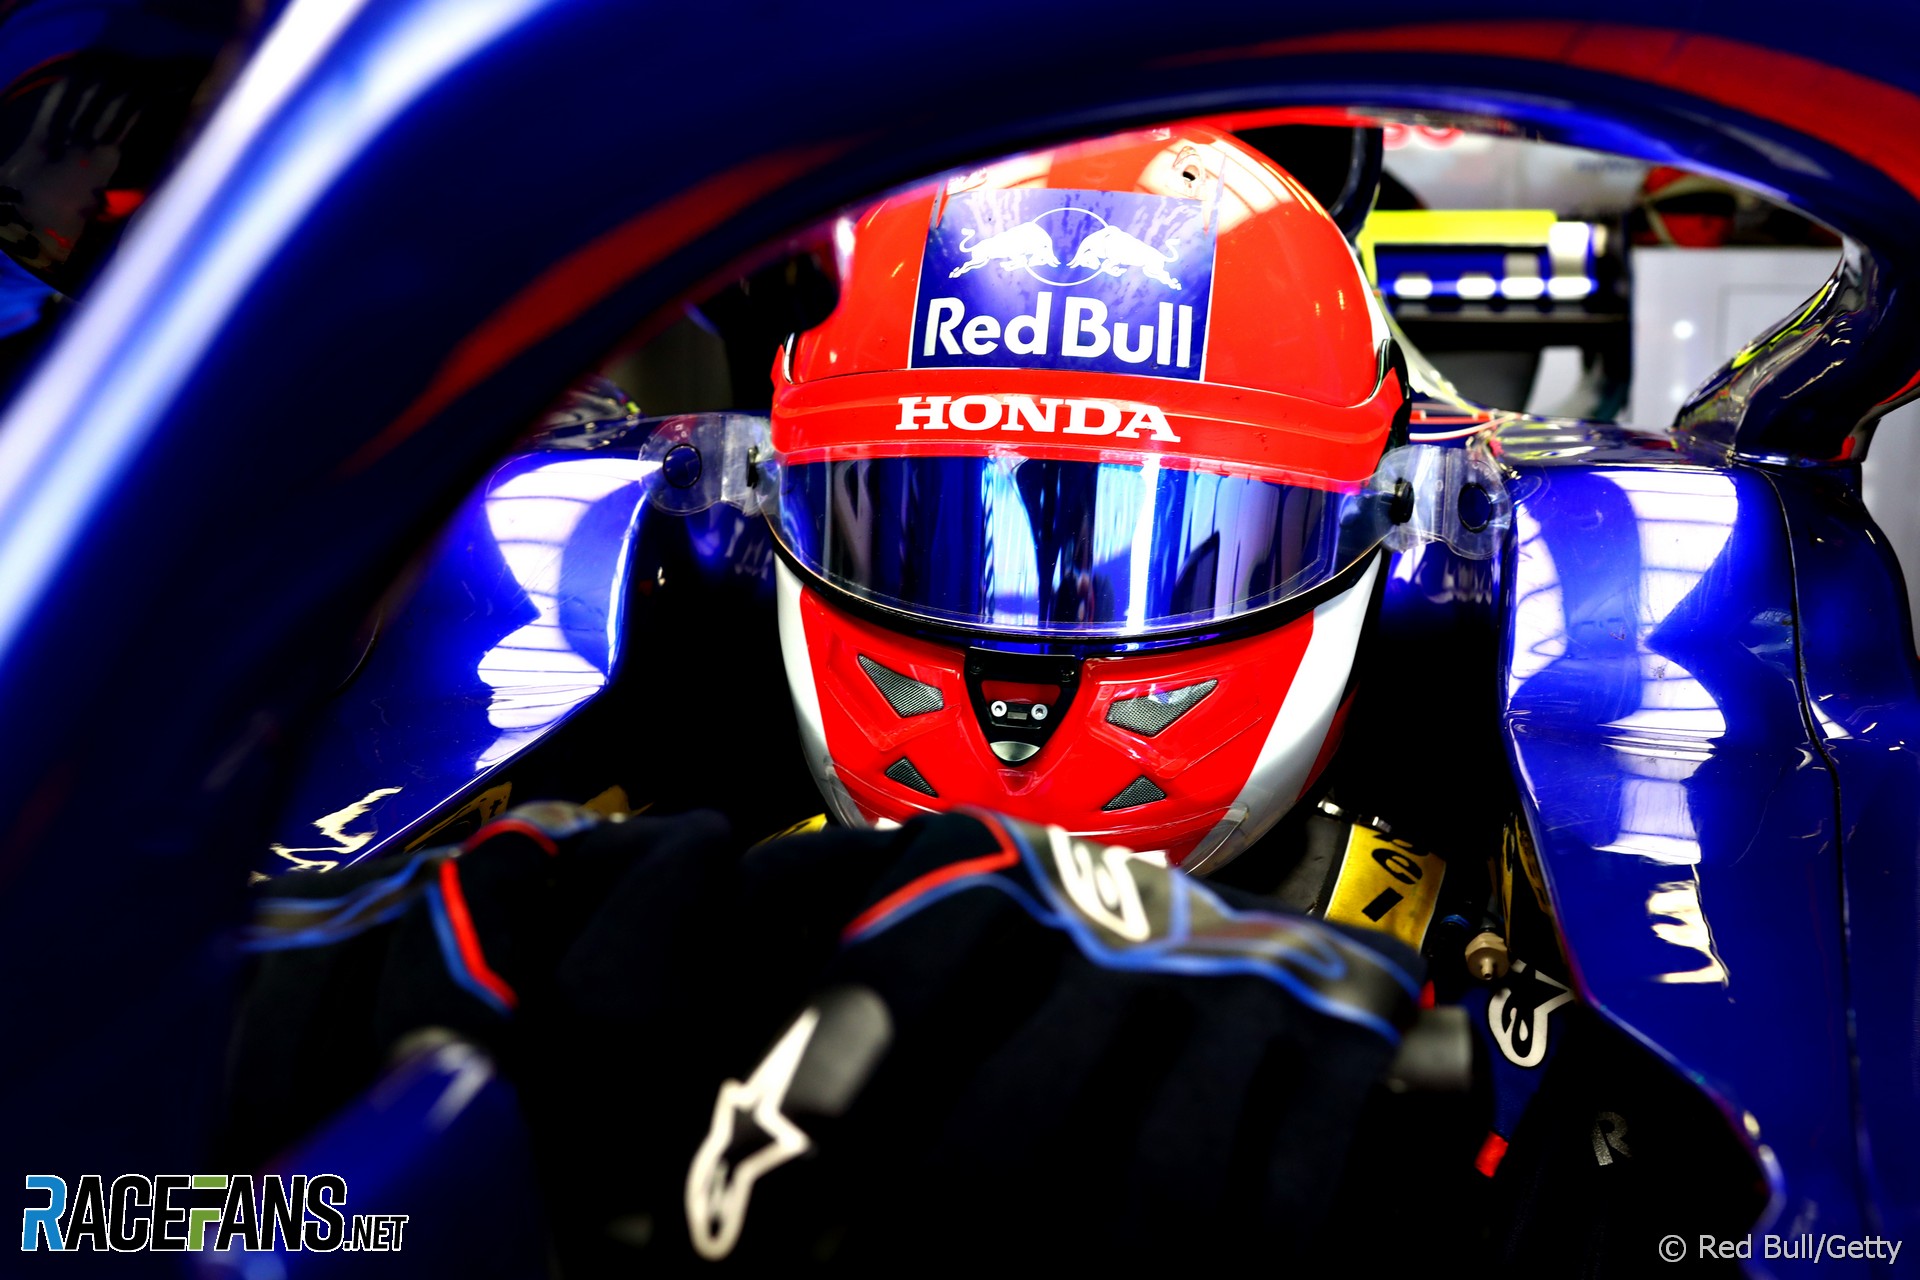 Daniil Kvyat, Toro Rosso, Circuit de Catalunya, 2019